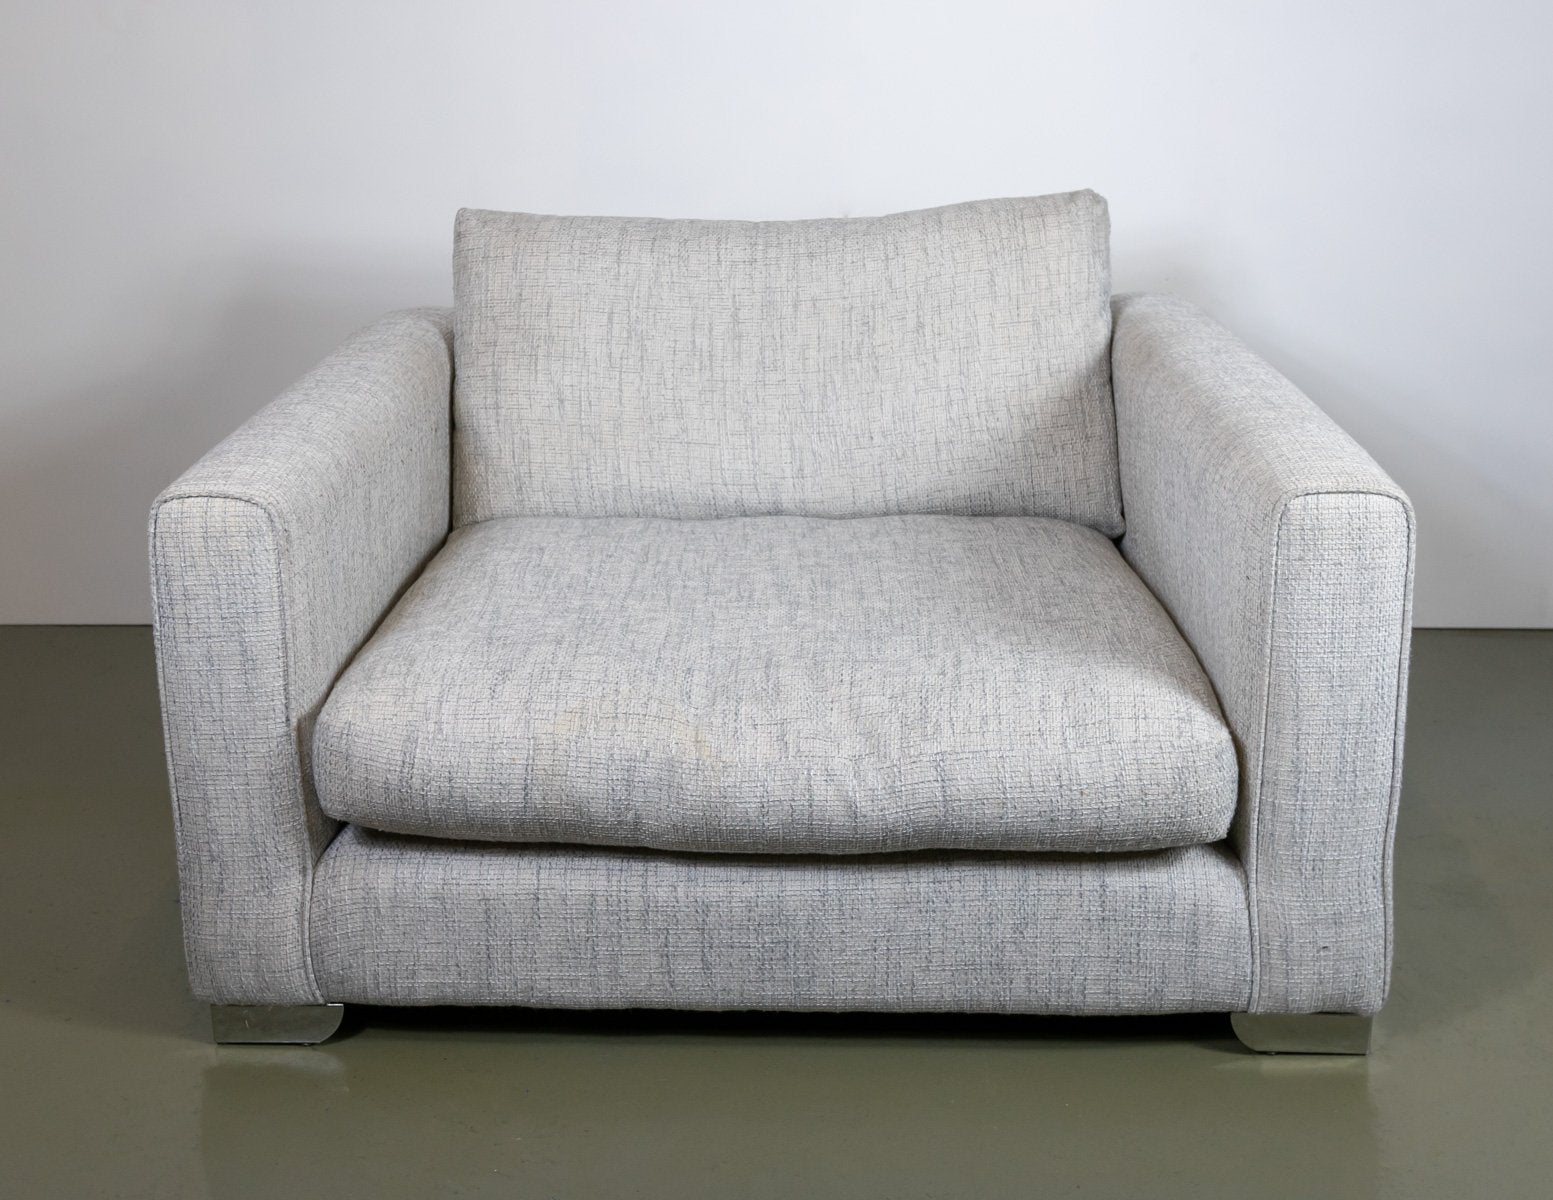 Sofology 3-piece Sofa Set